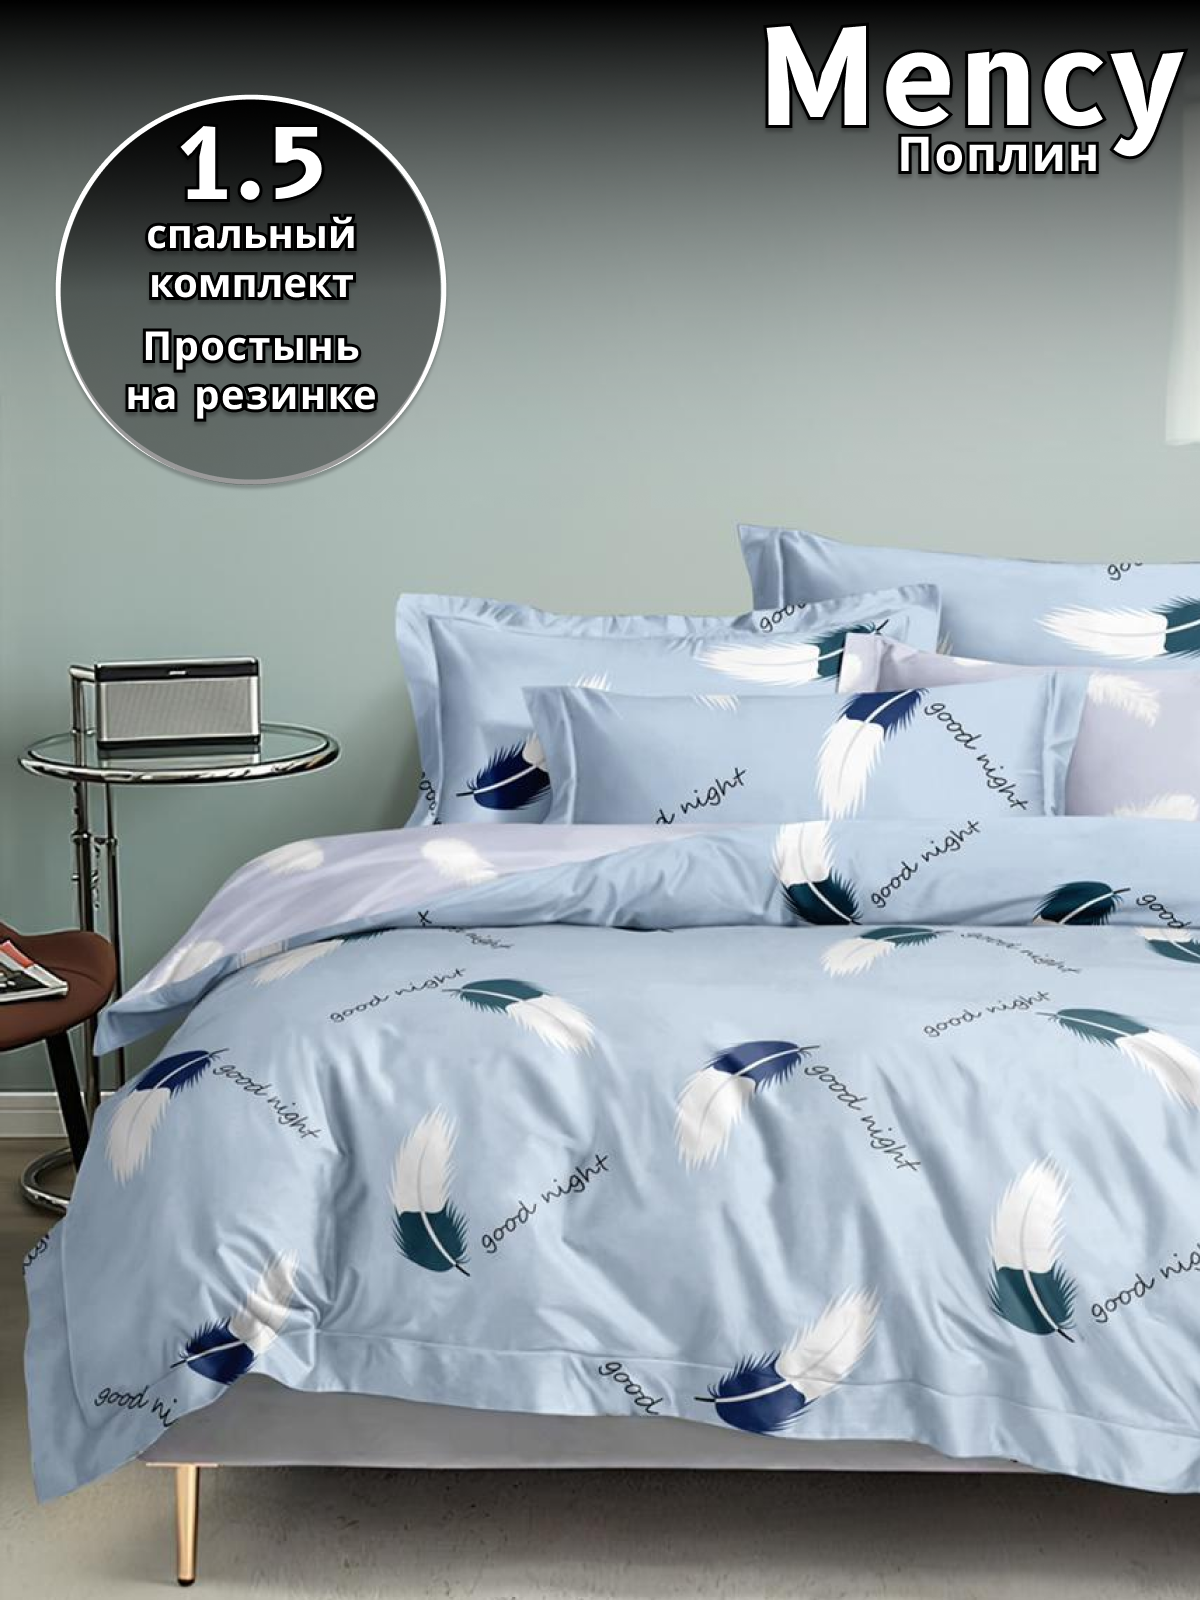 Комплект постельного белья Belle Store Mency House 1.5 спальный поплин голубой